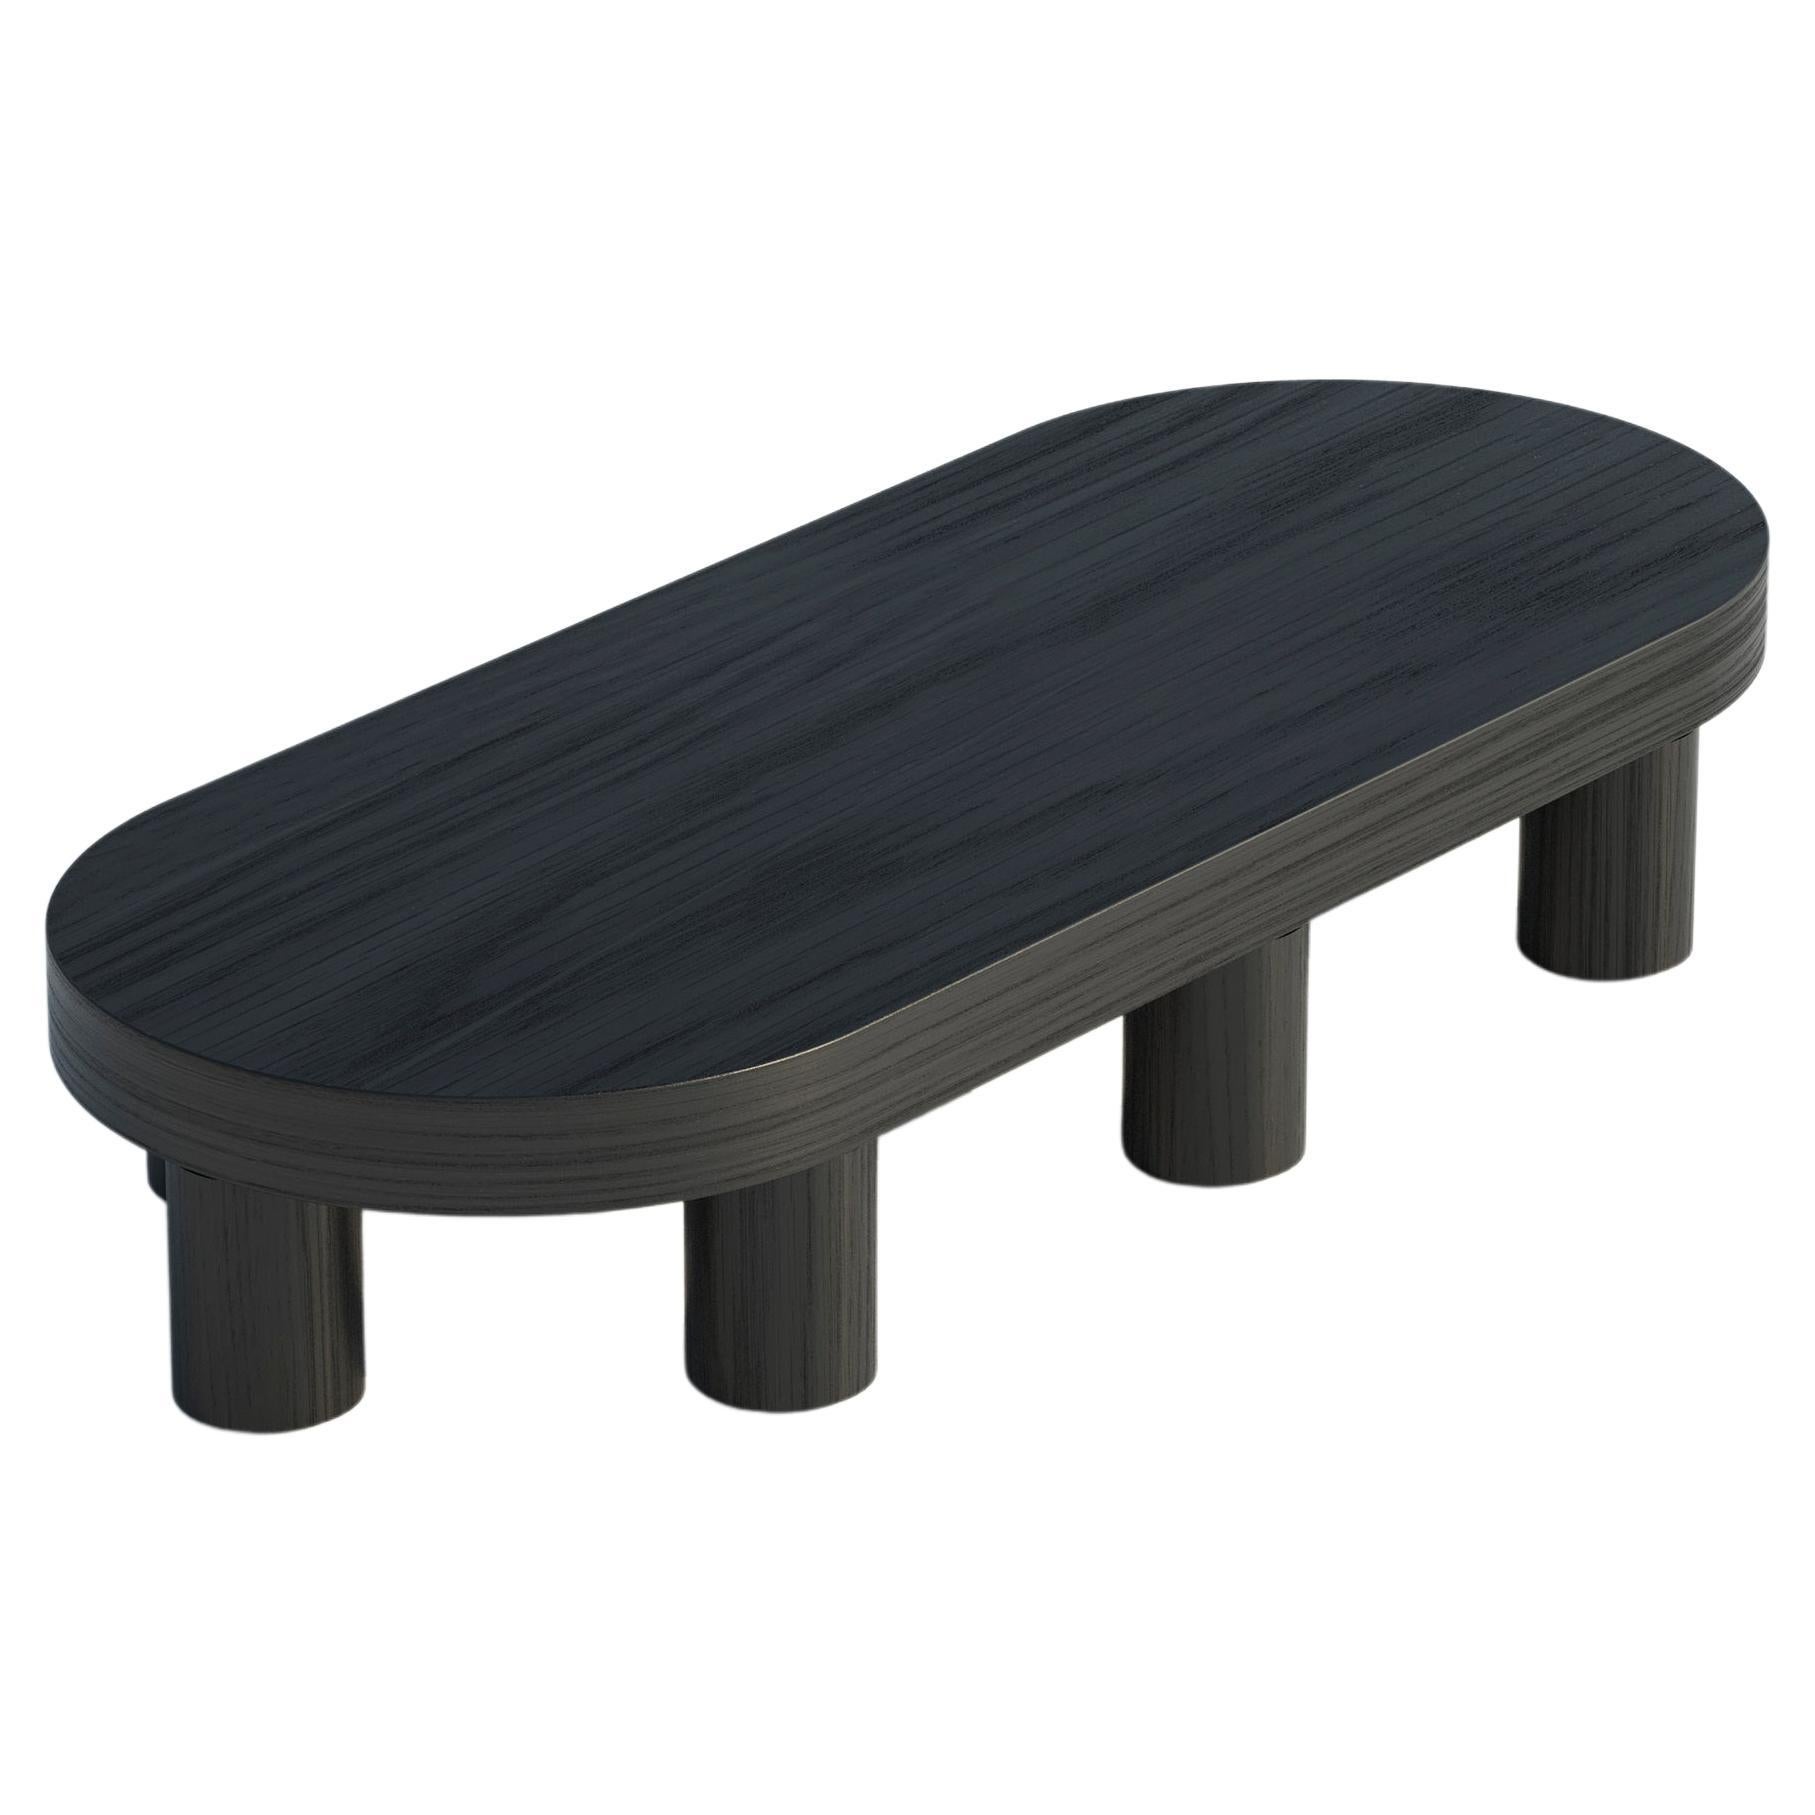 Table basse en chêne, couleur noire